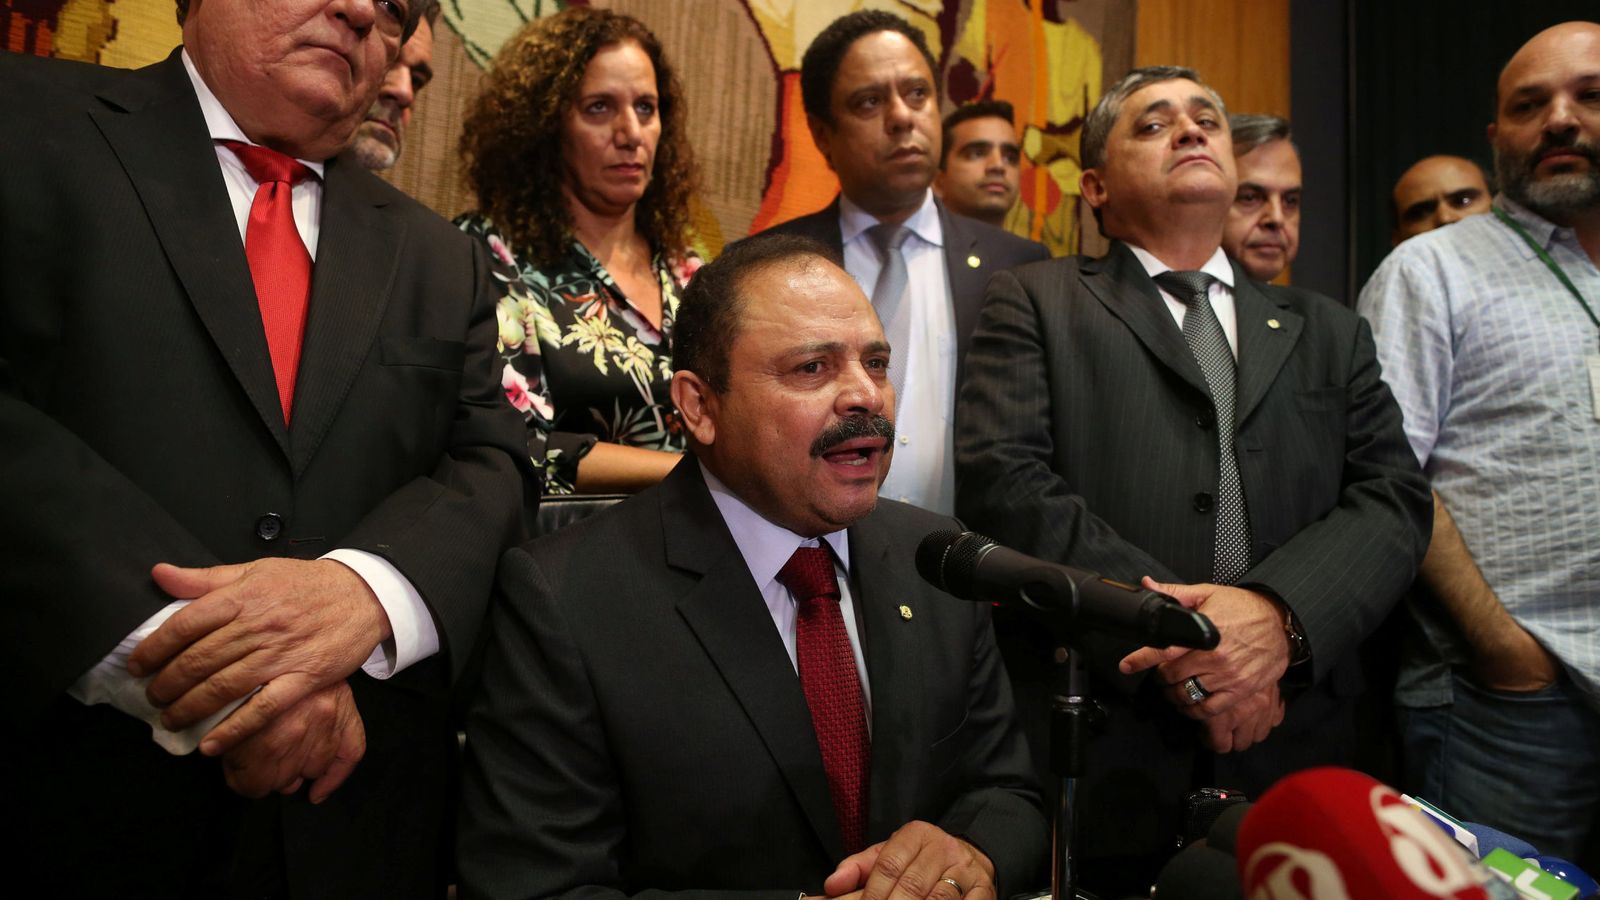 Foto: El diputado Waldir Maranhao, presidente interino de la Cámara Baja brasileña, durante una rueda de prensa en Brasilia (Reuters).